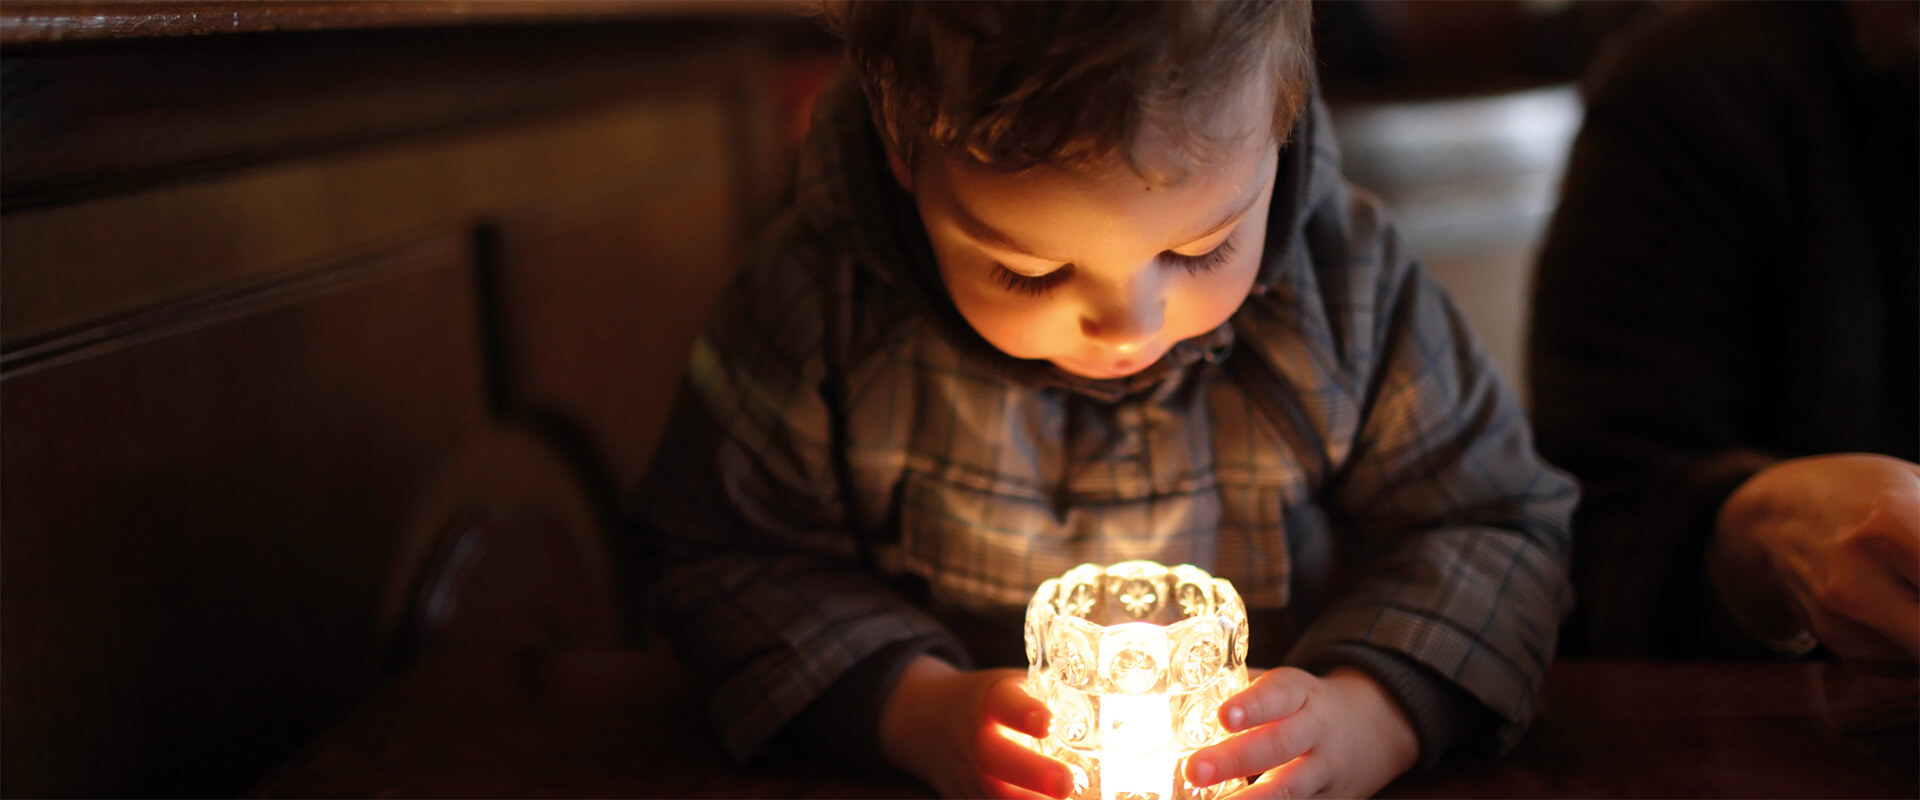 Come creare una candela con olio di oliva – Fratelli Carli